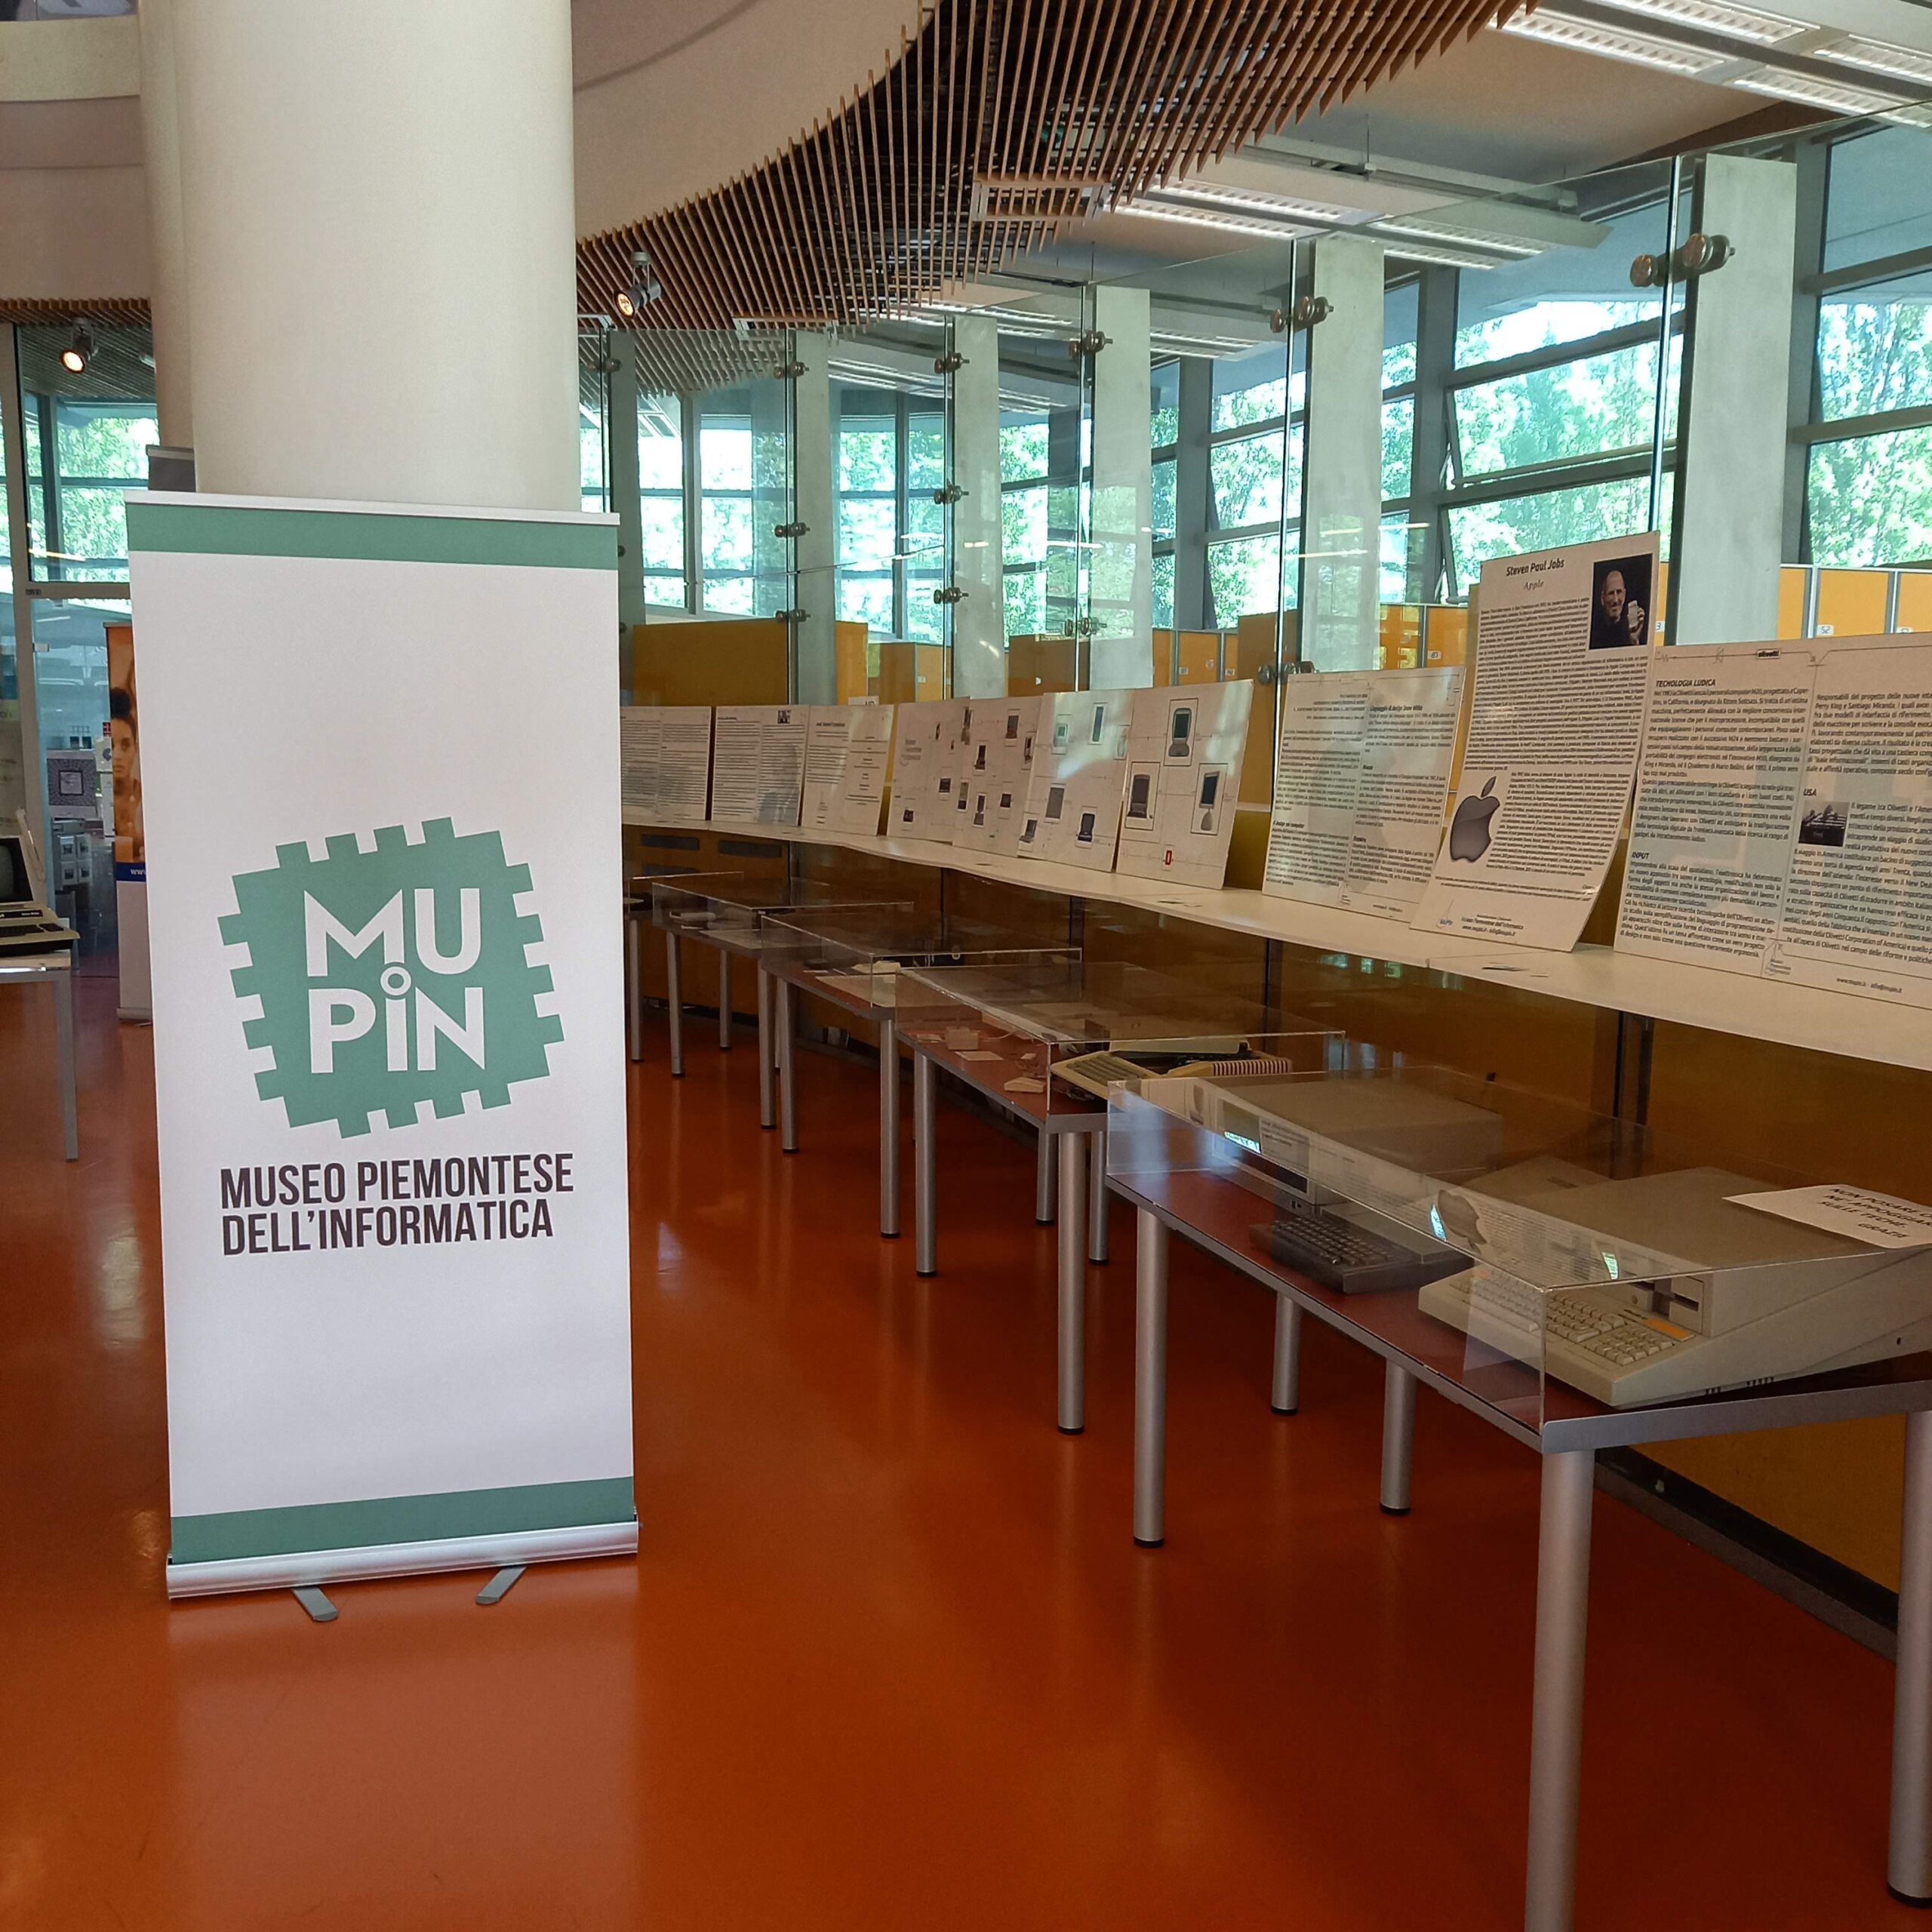 Alla Biblioteca Norberto Bobbio del Campus Luigi Einaudi di Torino le mostre di Mupin su Apple, Commodore e Olivetti